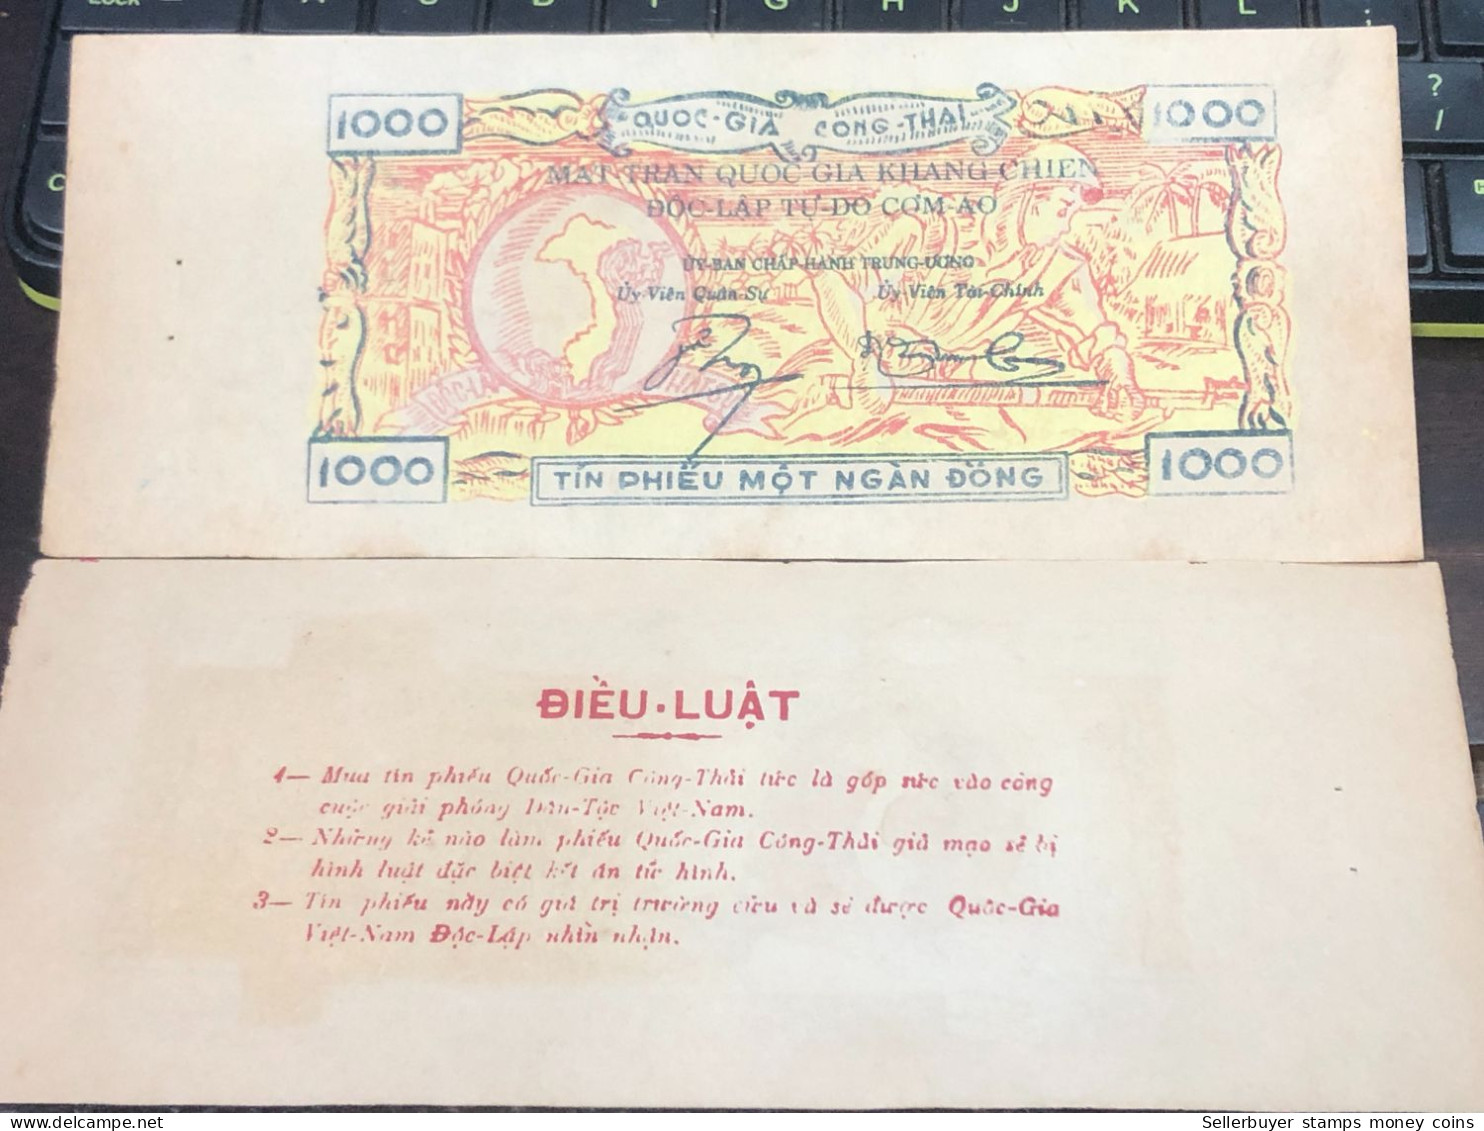 SOUTH VIETNAM BONUS 1000 NATIONAL DONG THAILAND/KANG CHIEN NATIONAL PEARL- Paper BEFORE 1975/-1PCS RARE NAM VIET NAM  TÍ - Schecks  Und Reiseschecks